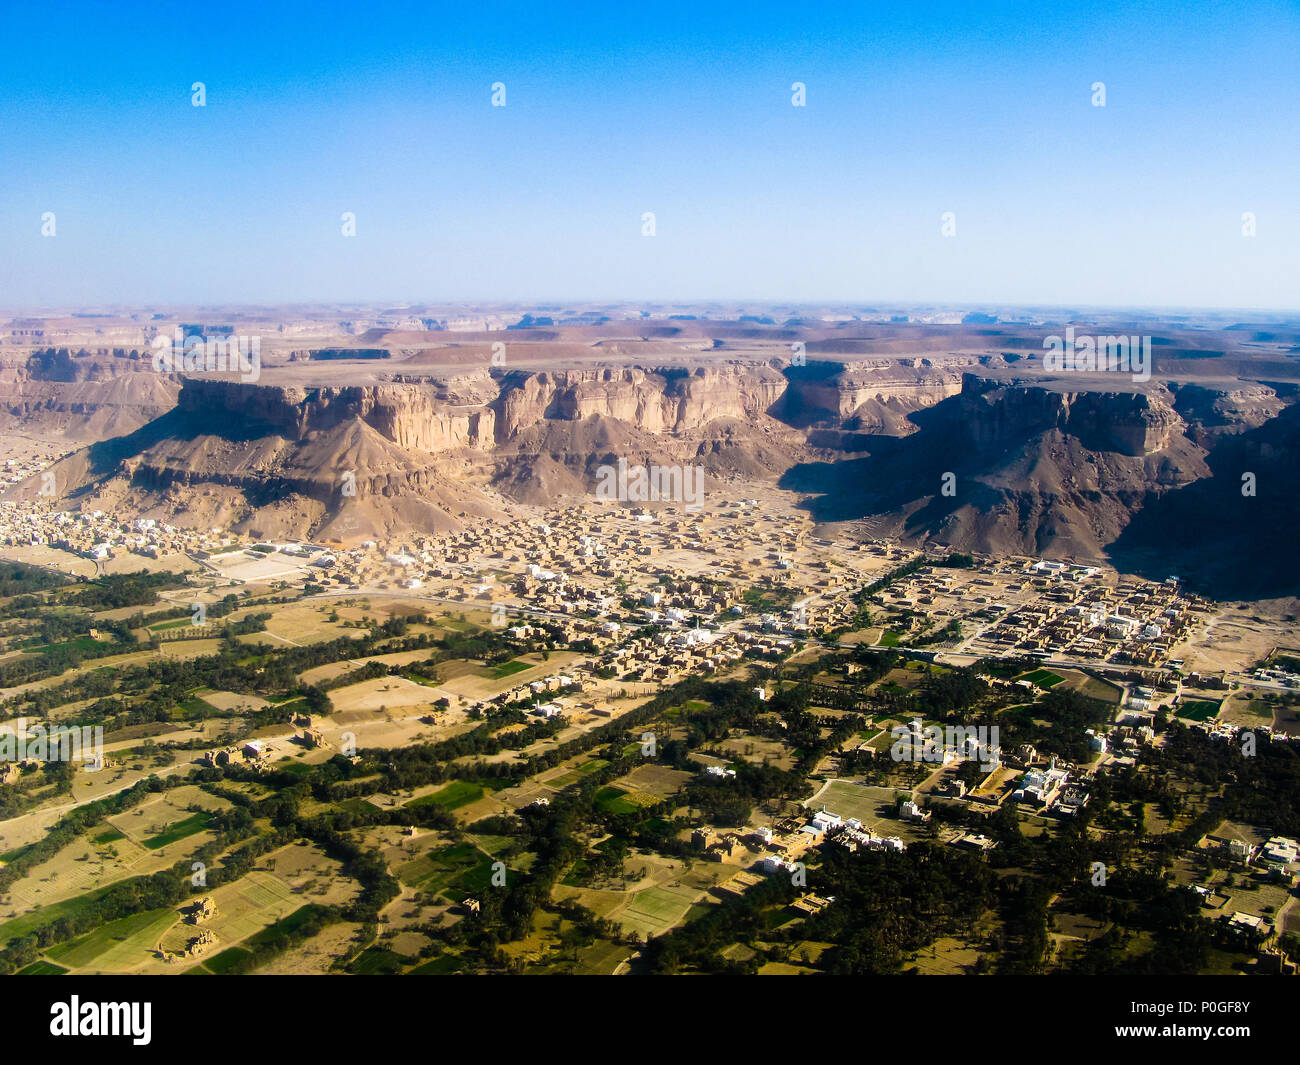 Aerial view to Shibam city and wadi Hadhramaut in Yemen Stock Photo